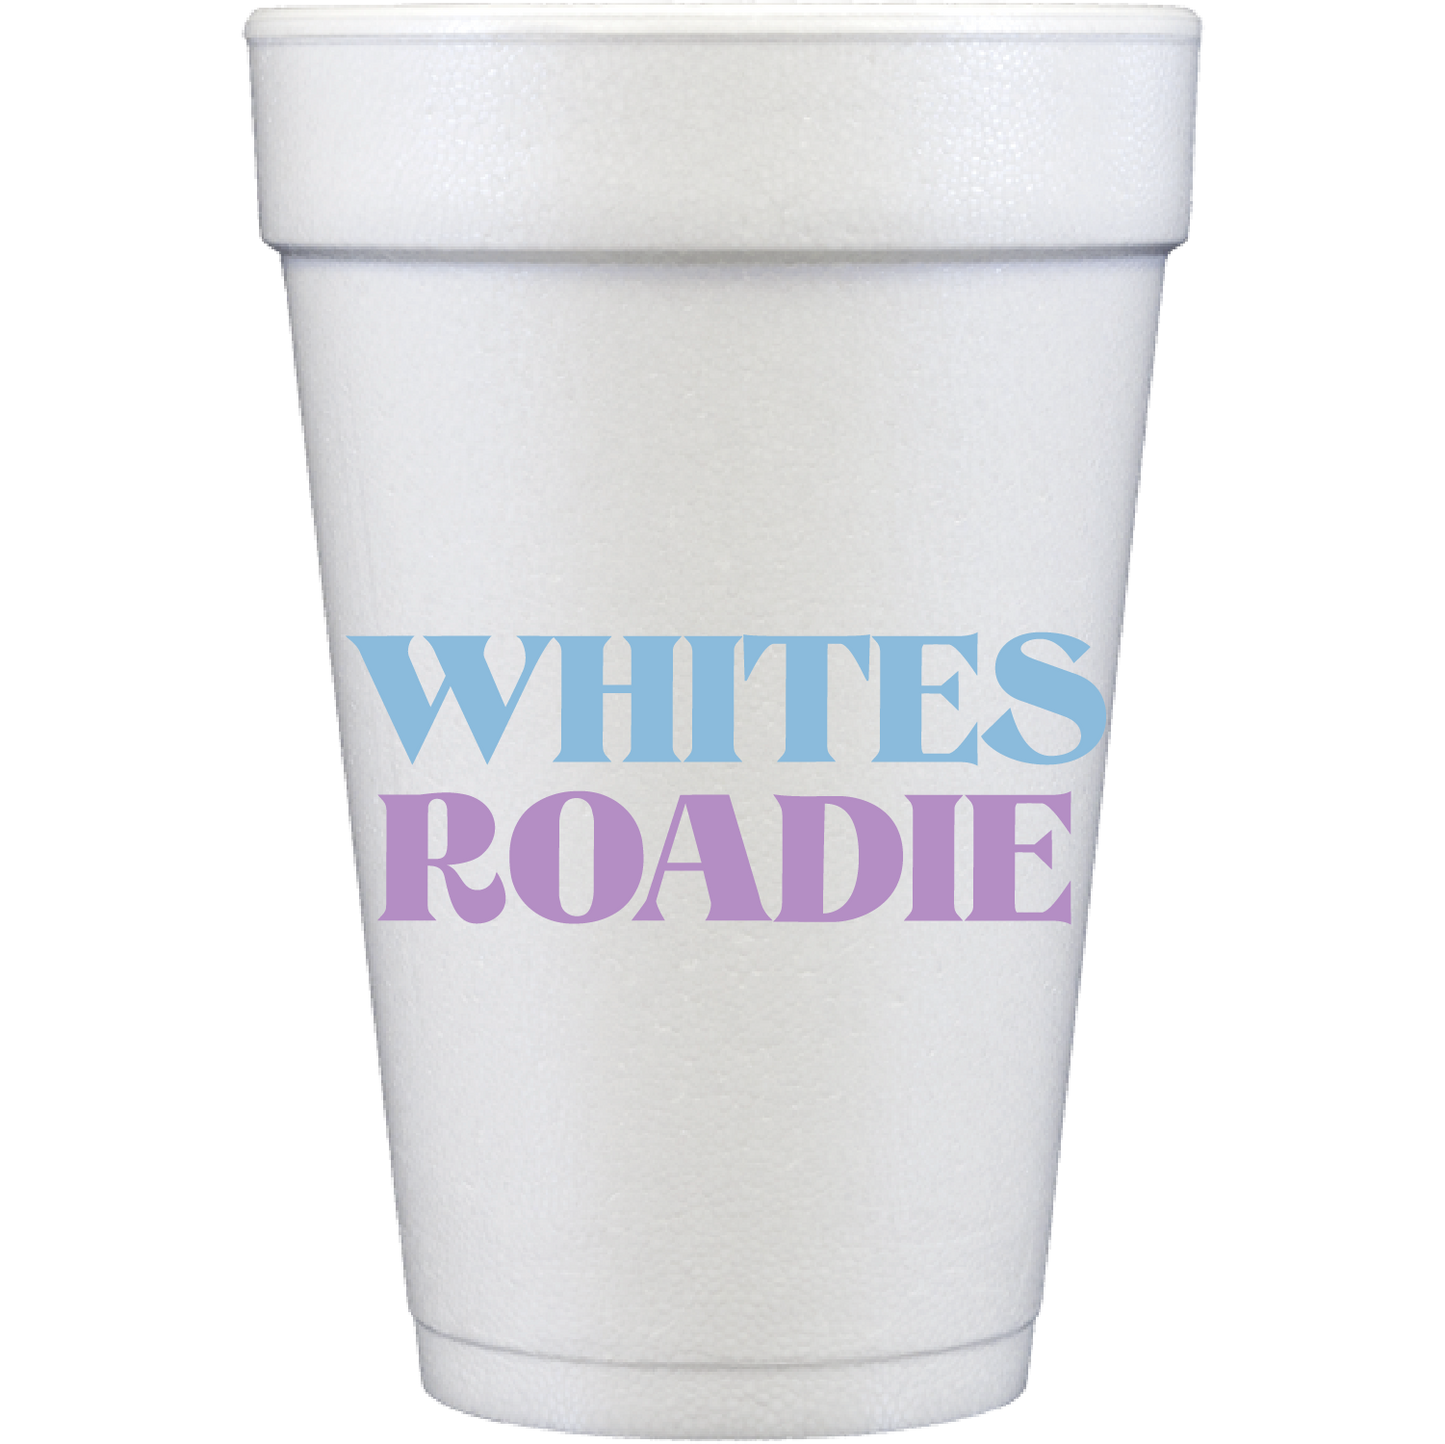 groovy roadie | styrofoam cups